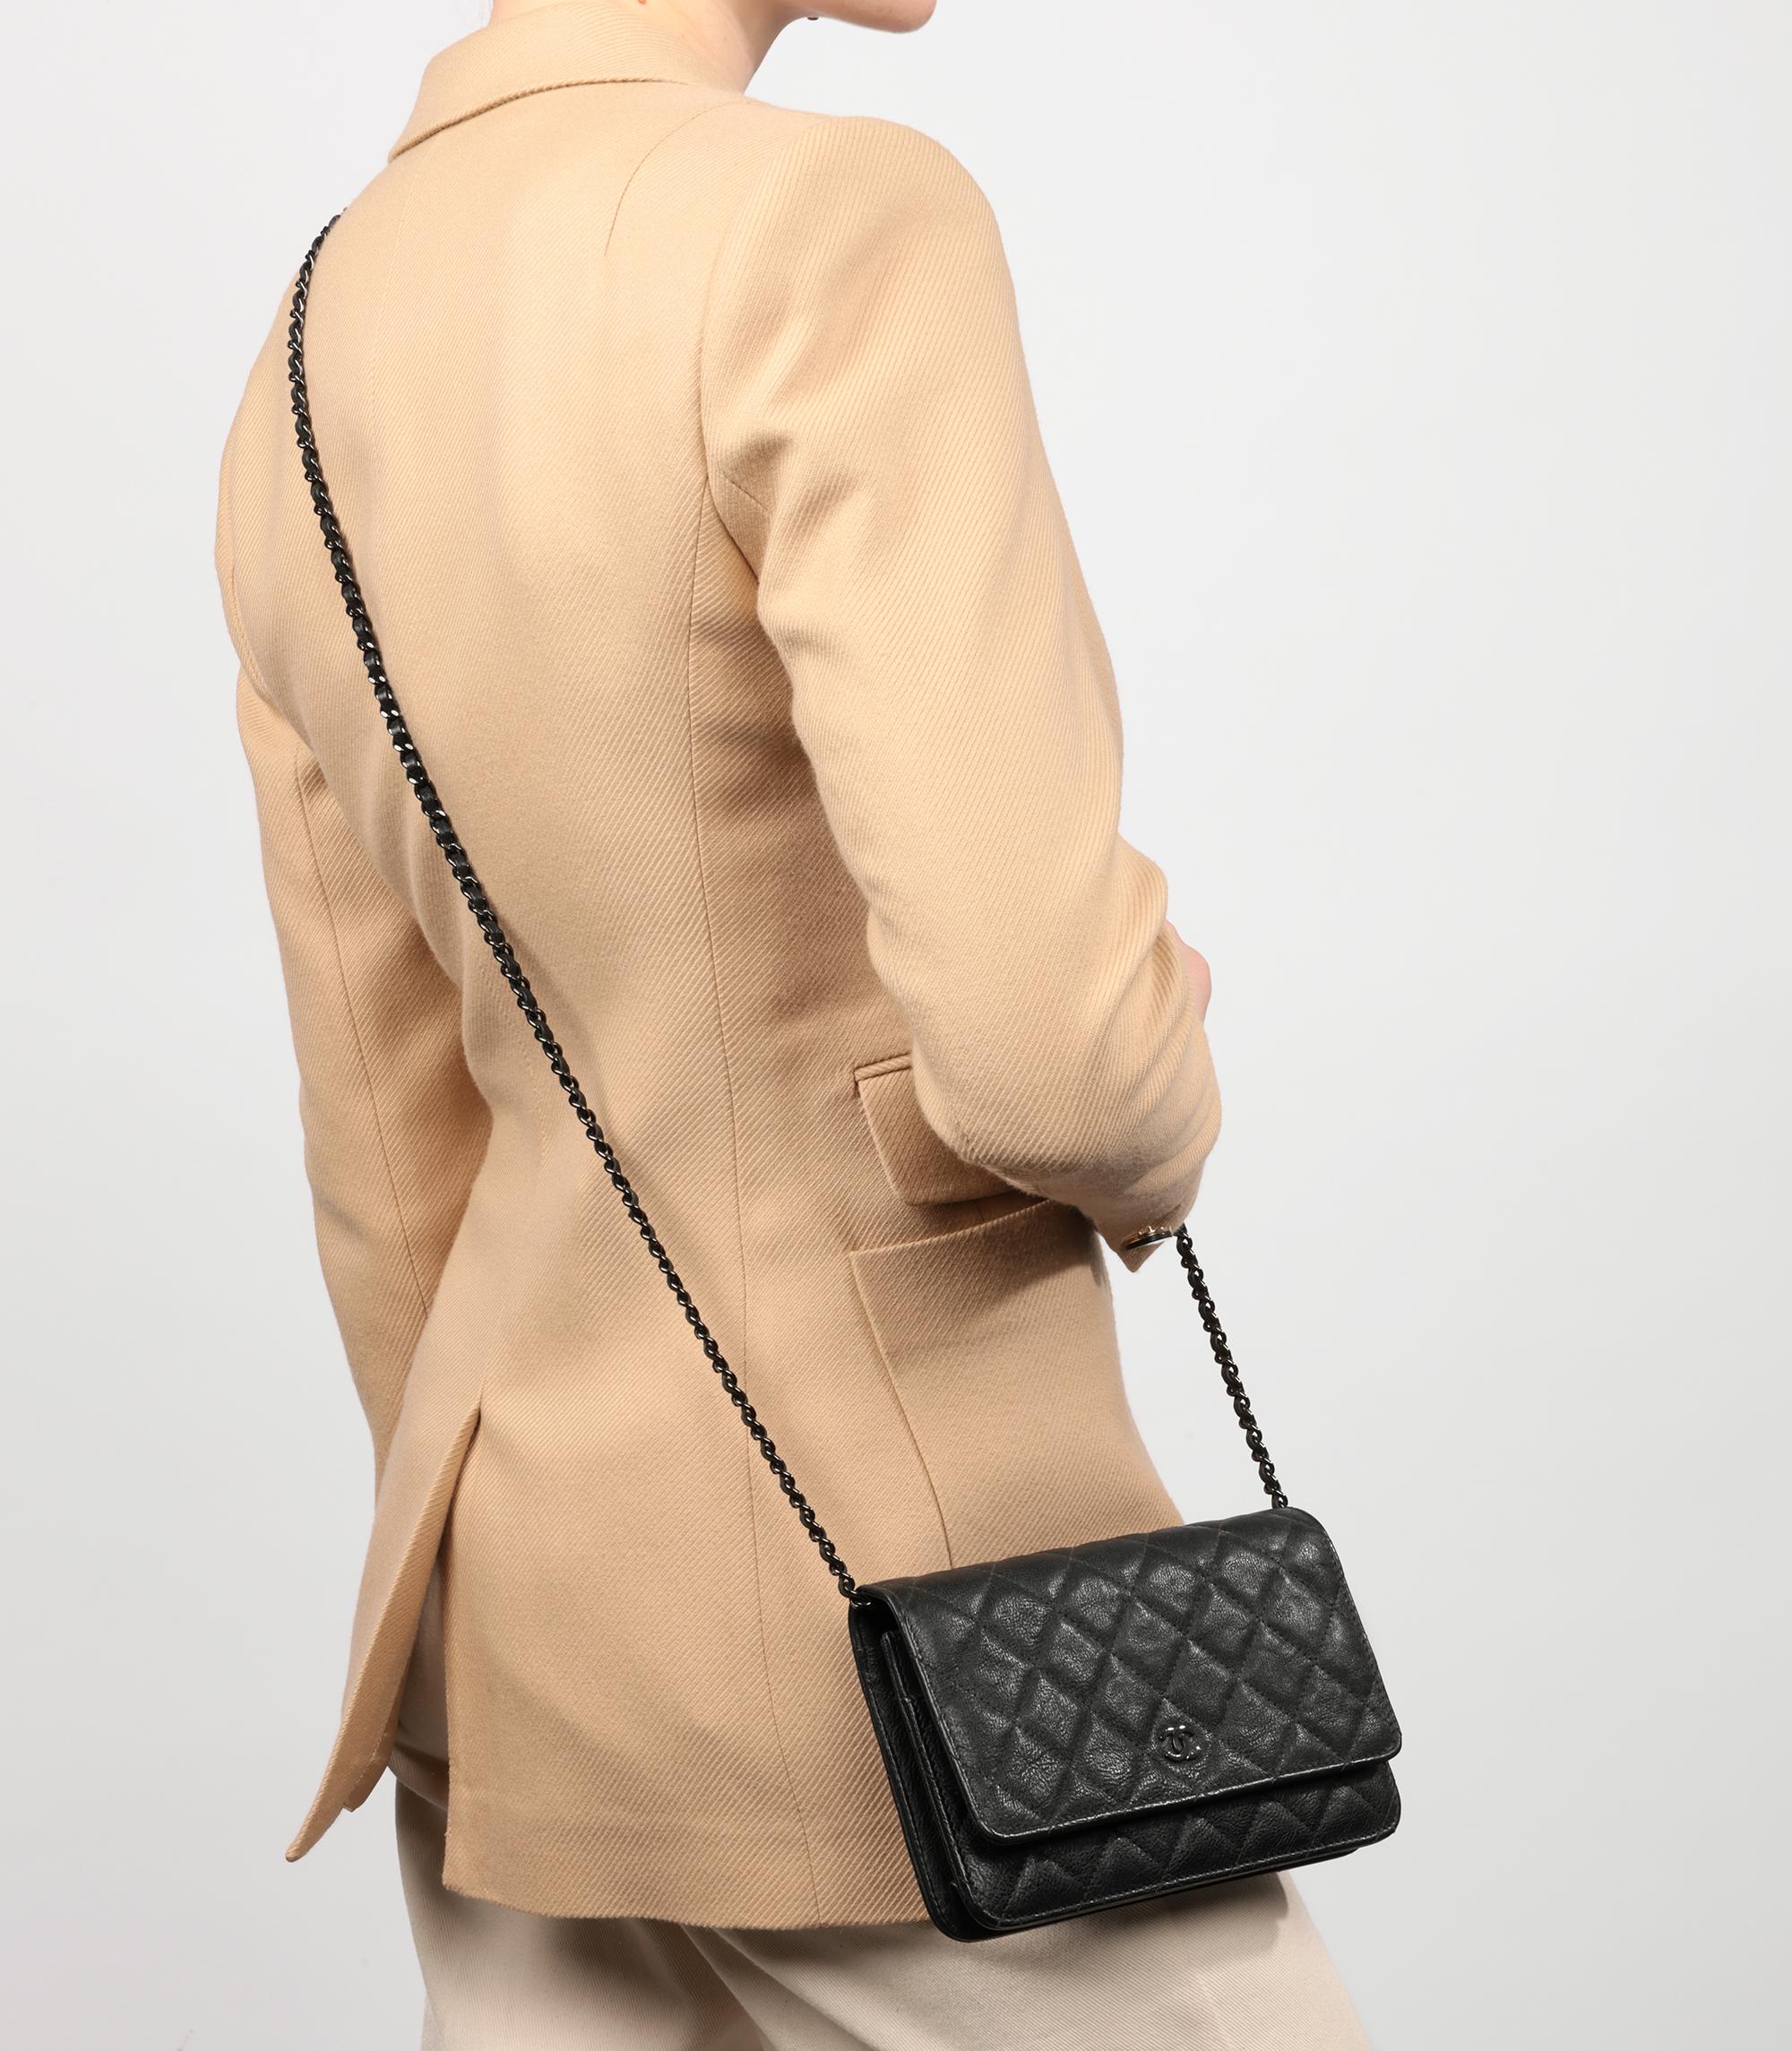 Chanel Black Quilted Crumpled Calfskin Leather SO Black Wallet-On-Chain WOC

Marque : Chanel
Modèle- Wallet-on-Chain
Type de produit- Croisé, Epaule
Numéro de série - 24******
NO AGE - Circa 2017
Accompagné de : Boîte Chanel, Carte